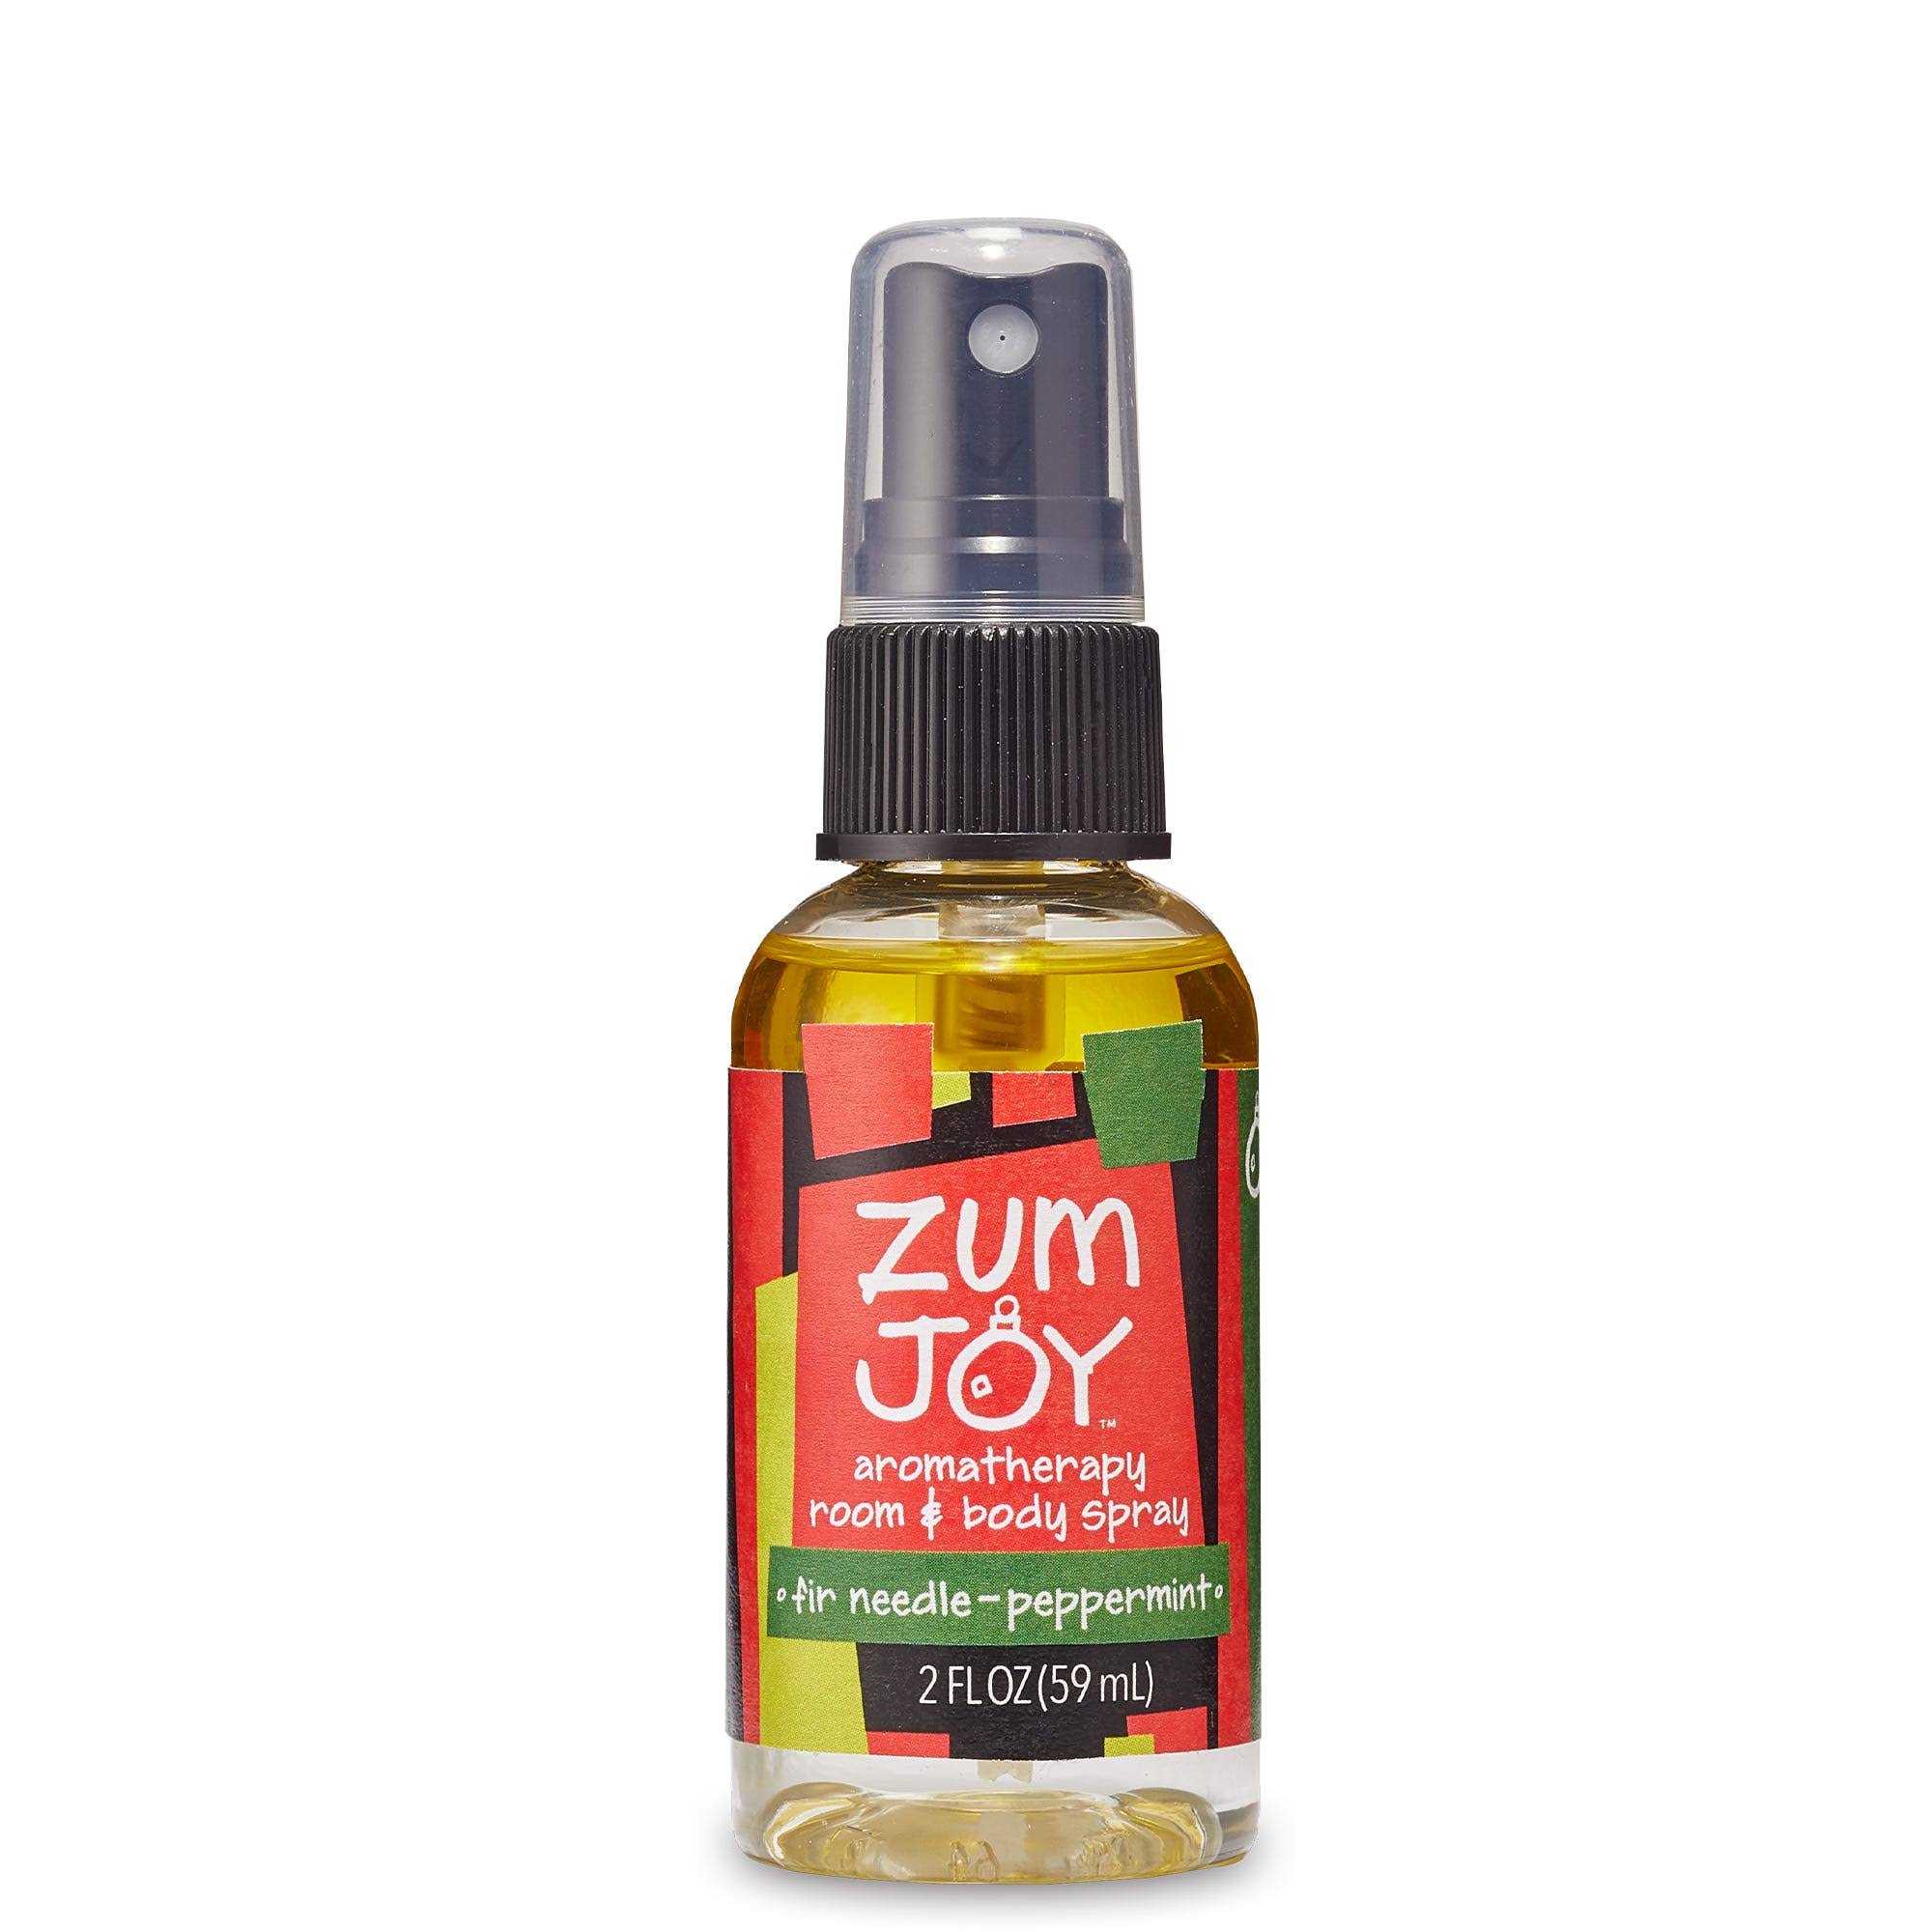 Zum Joy Room & Body Spray, Aromatherapy, Fir Needle-Peppermint - 2 fl oz